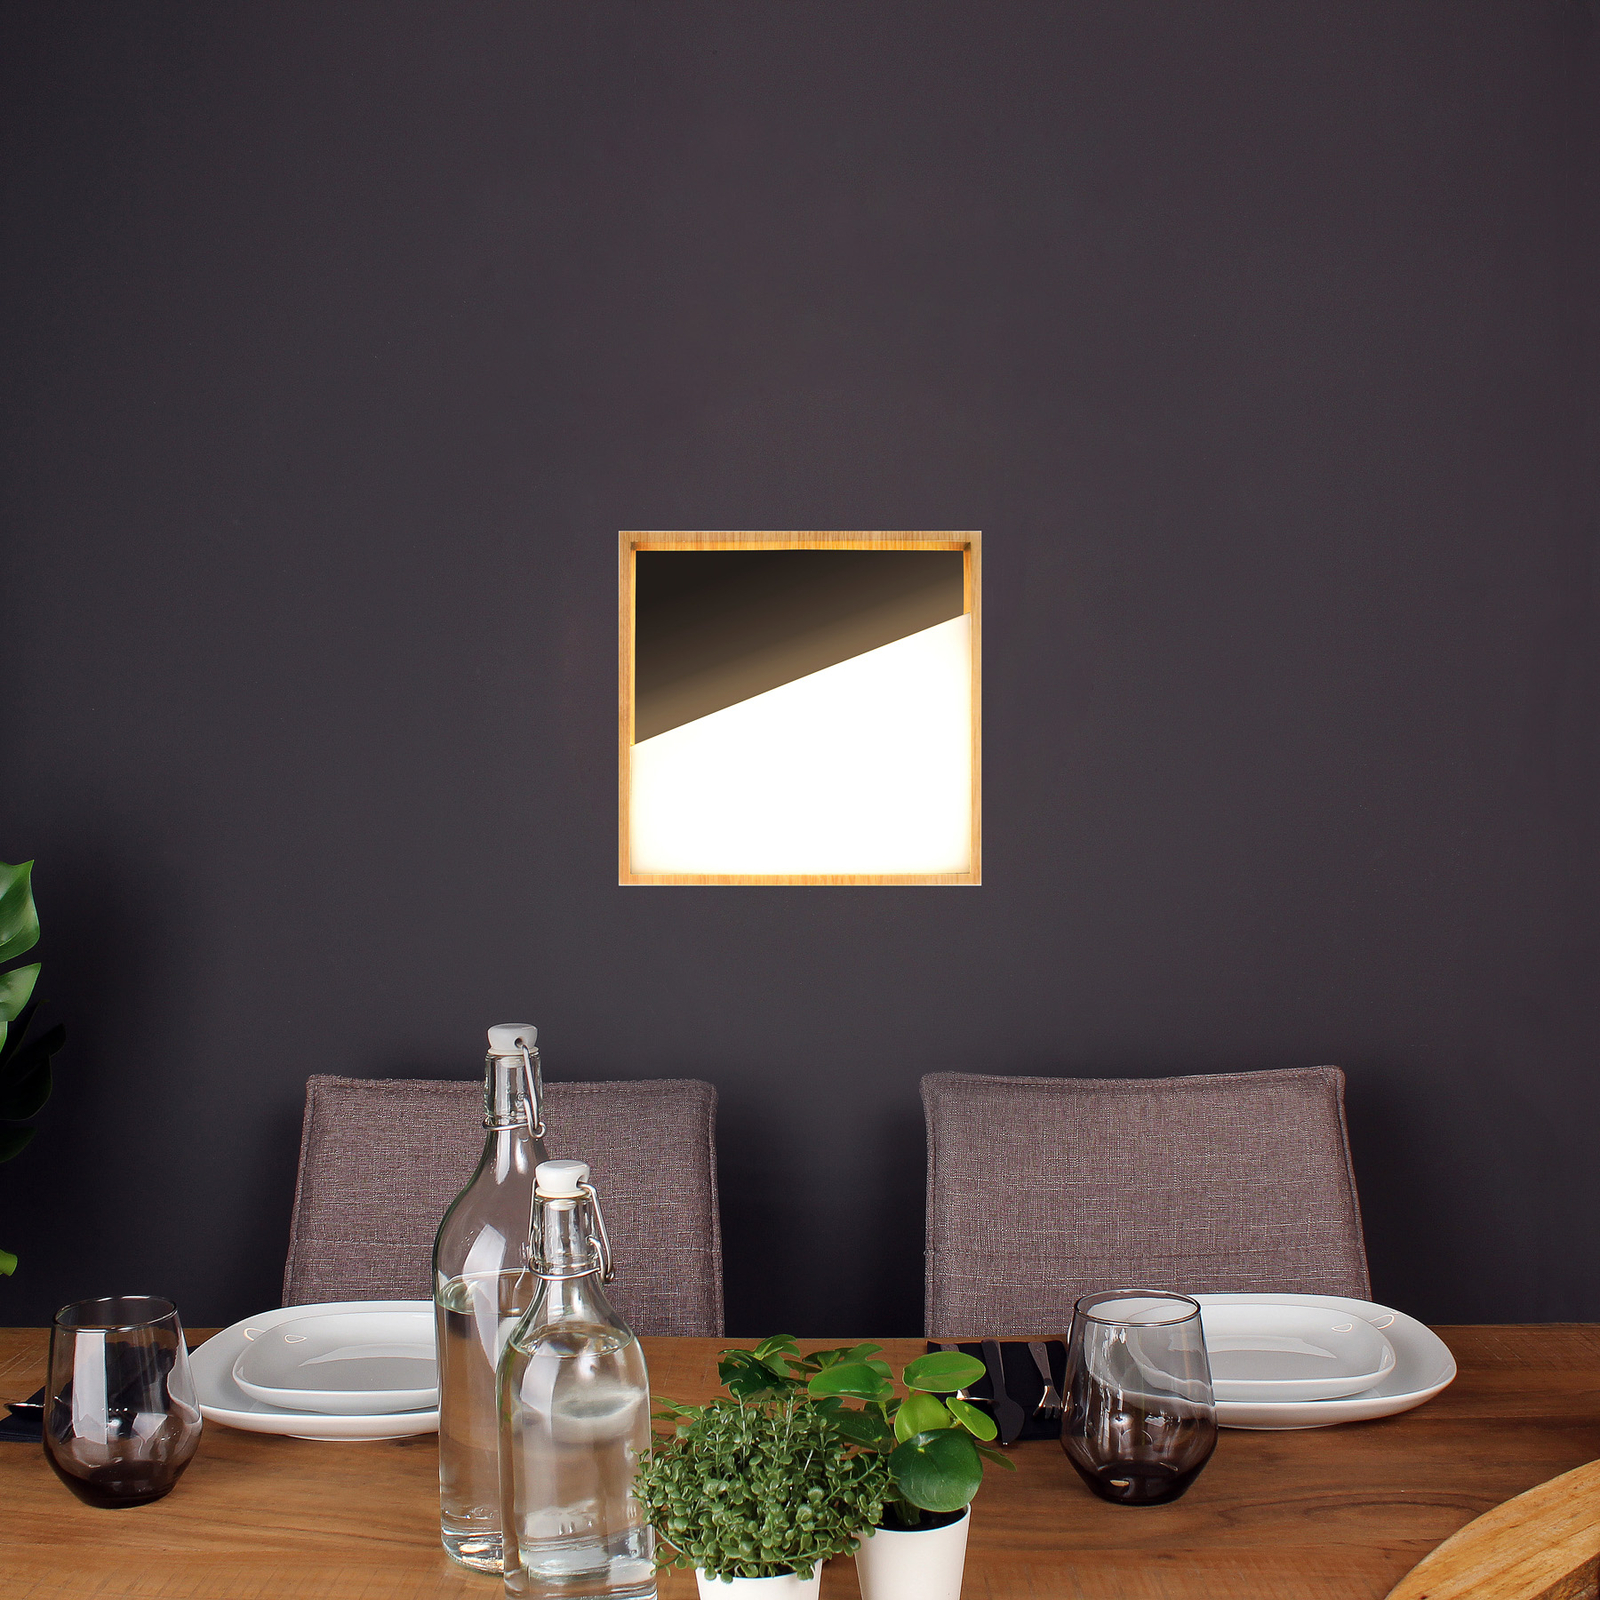 Nástěnné svítidlo LED Vista, černá barva/světlé dřevo, 30 x 30 cm